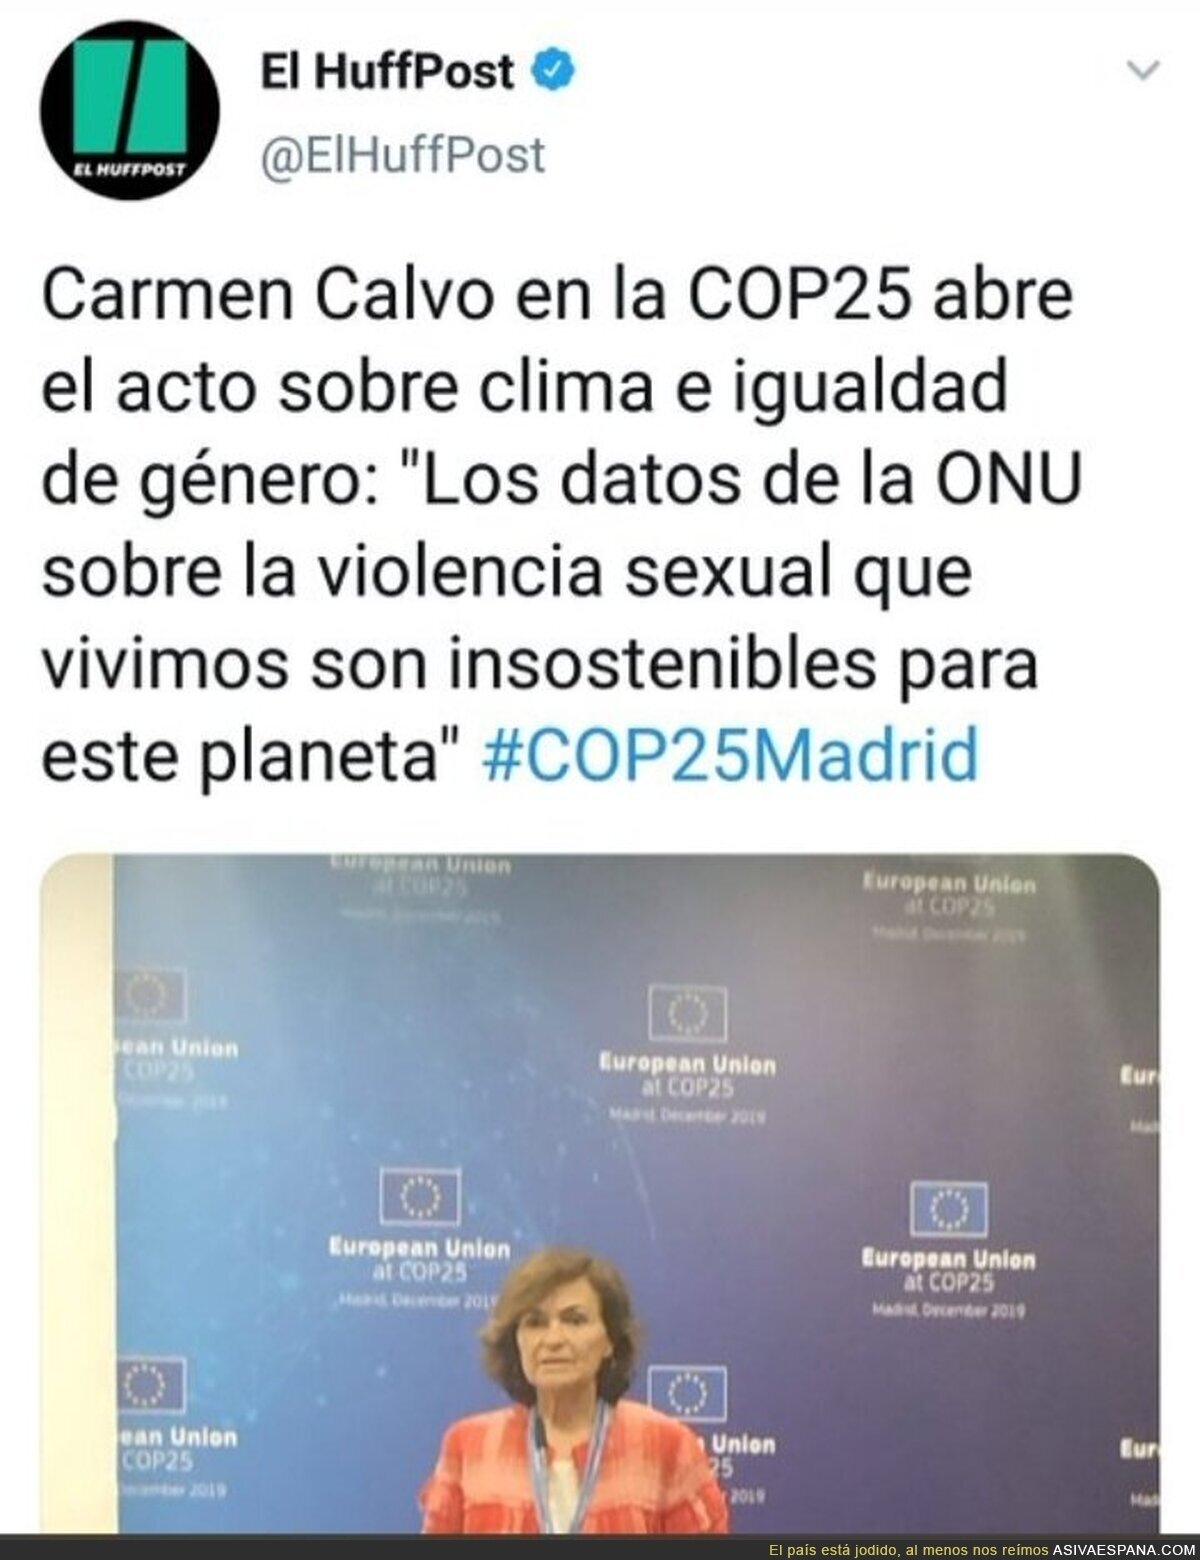 Carmen Calvo vincula el ecologretismo con el feminismo, todo muy científico